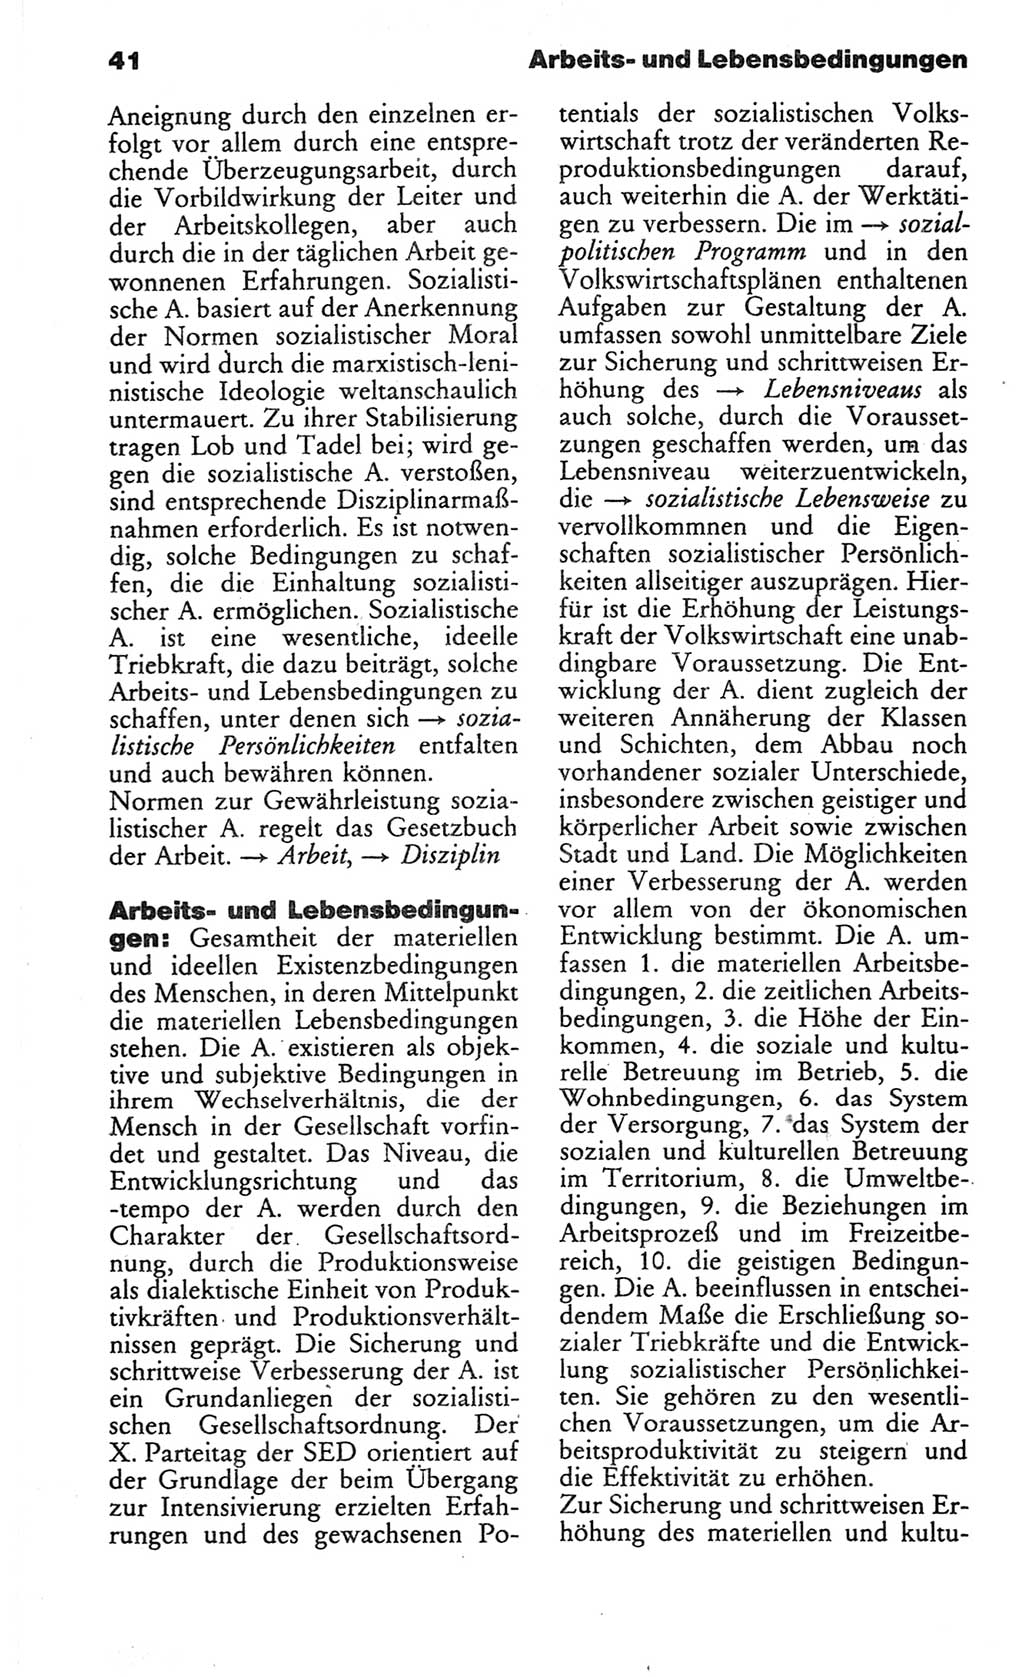 Wörterbuch des wissenschaftlichen Kommunismus [Deutsche Demokratische Republik (DDR)] 1982, Seite 41 (Wb. wiss. Komm. DDR 1982, S. 41)